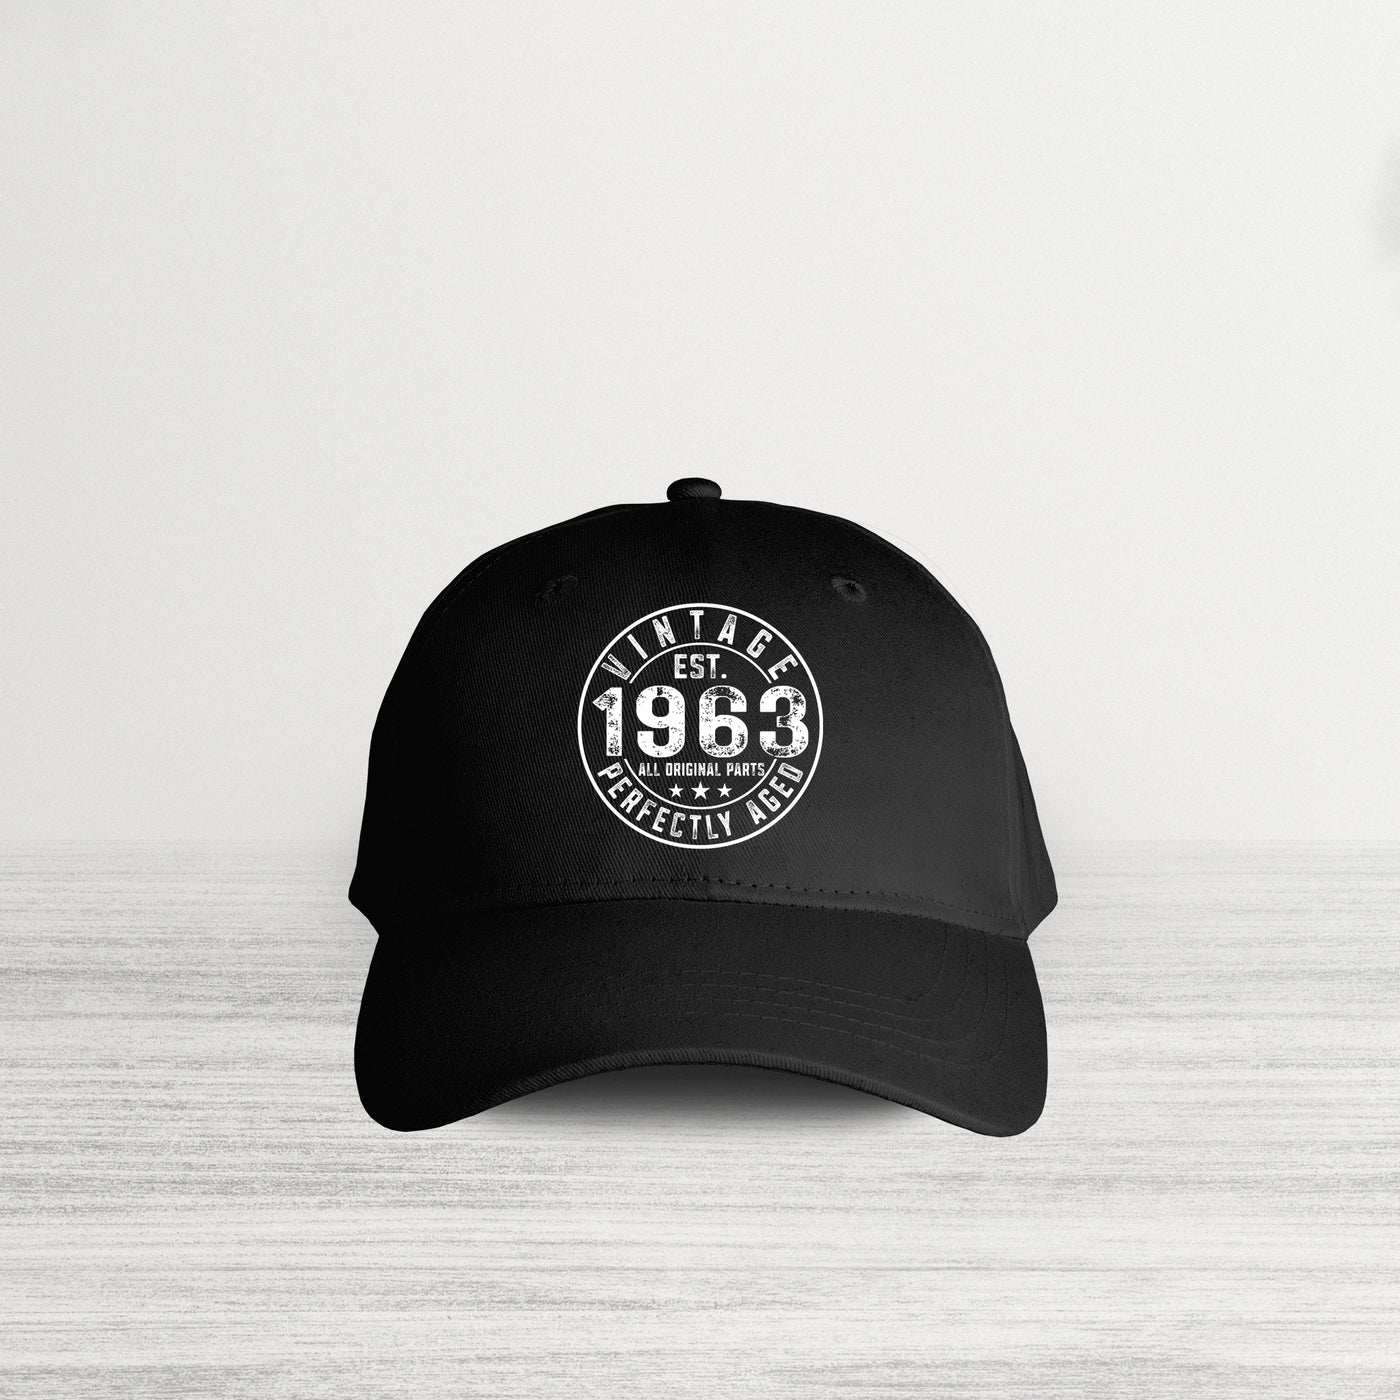 Vintage 1963 HAT